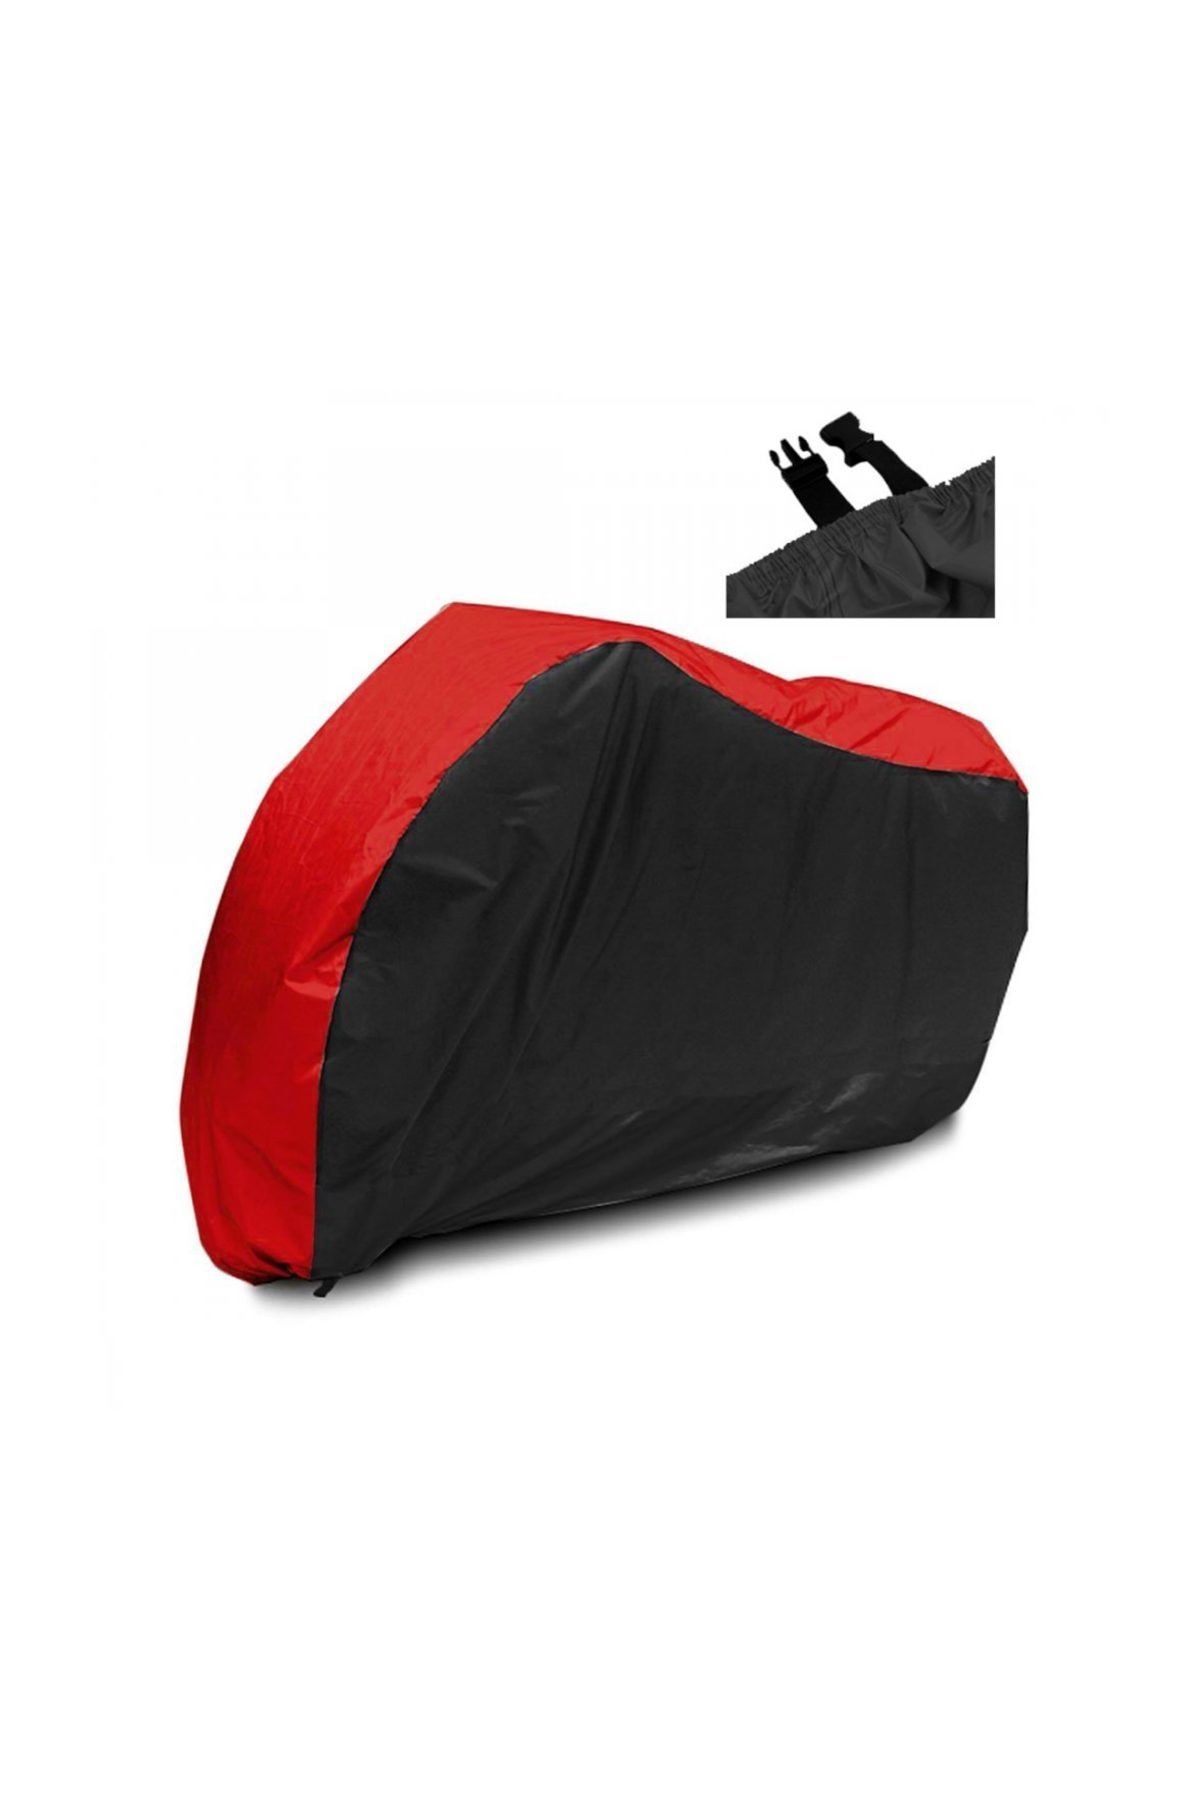 AutoEN MotoEN Megelli 250 S Branda ARKA ÇANTA UYUMLU Motosiklet Brandası (Bağlantı Tokalı) Siyah-Kırmızı